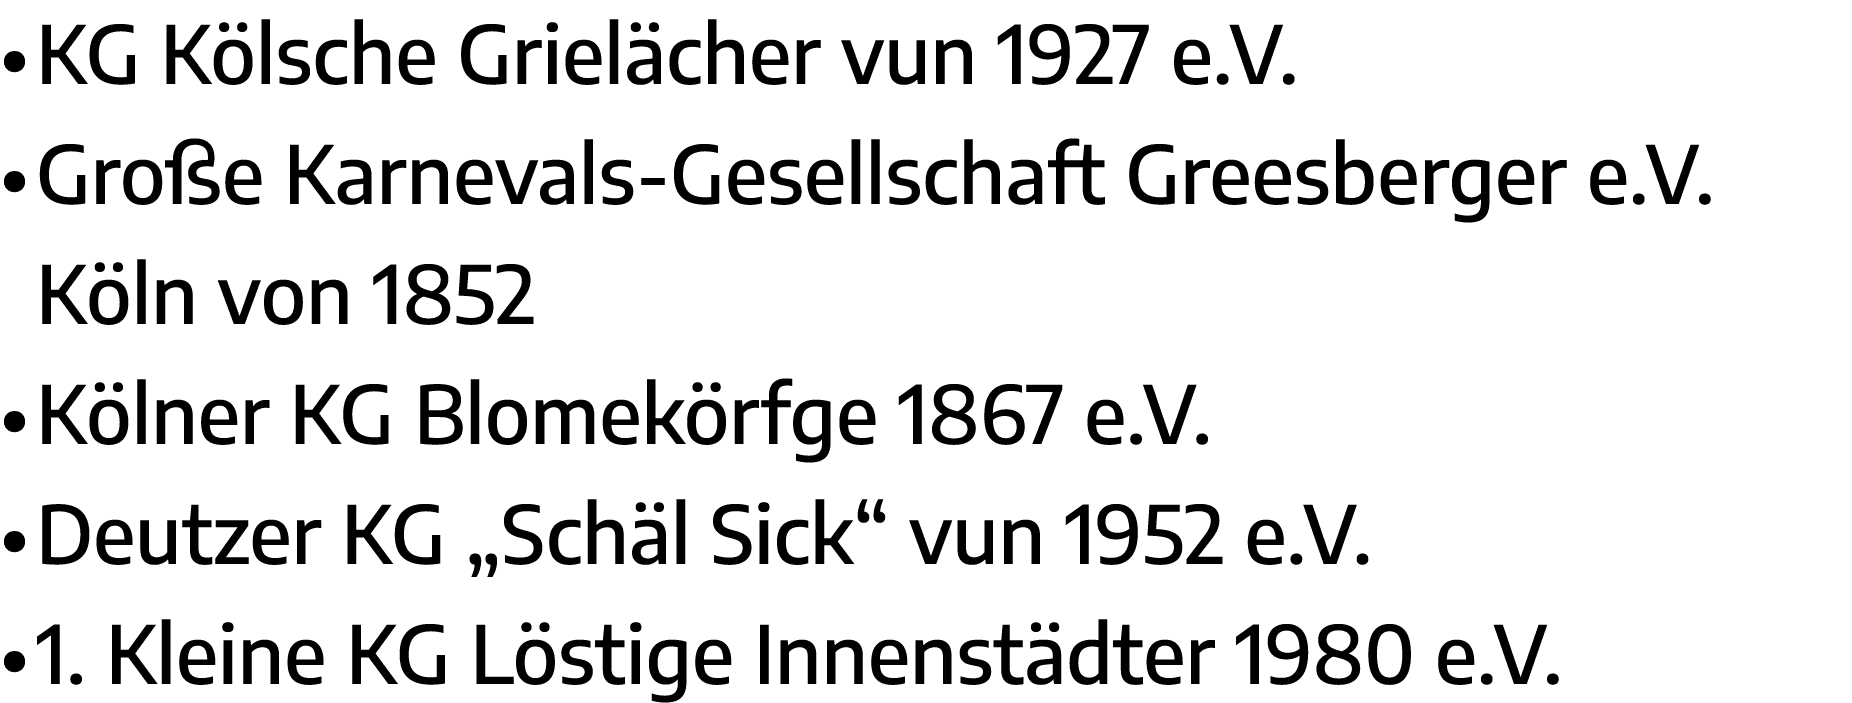   KG Kölsche Grielächer vun 1927 e V    Große Karnevals-Gesellschaft Greesberger e V  Köln von 1852   Kölner KG Blome   